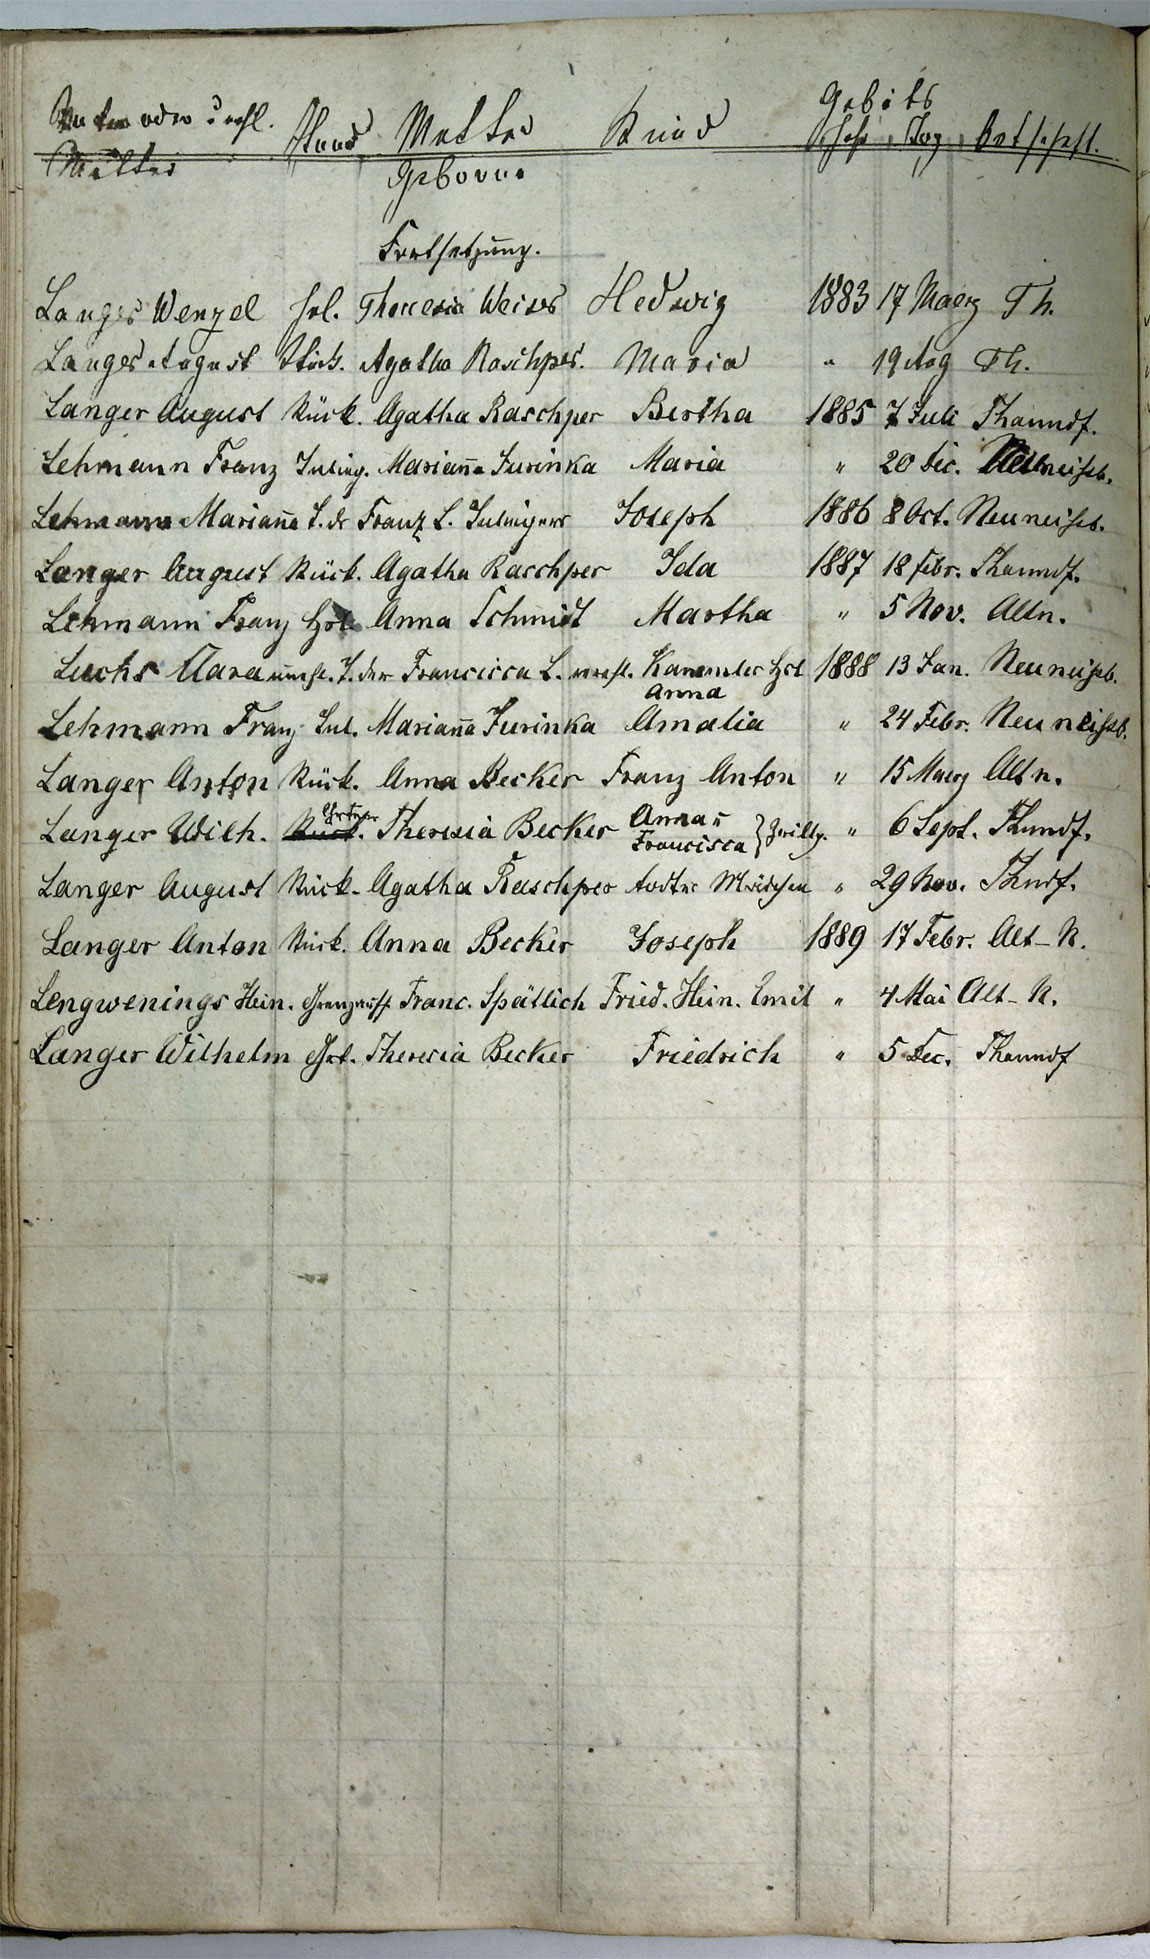 Taufregister 1770 - 1889 Seite 94